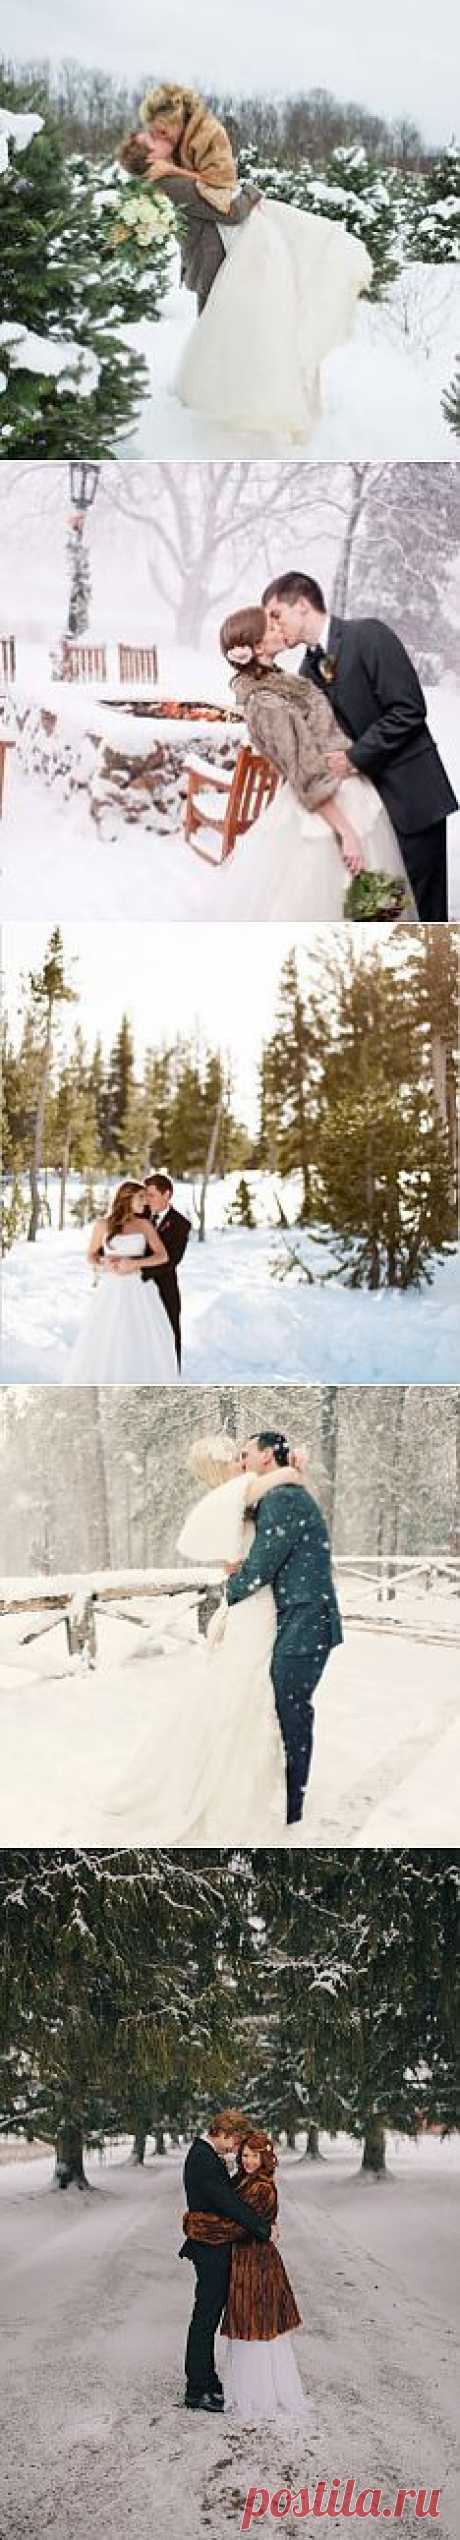 Особенности зимней свадебной фотосессии в городе - WeddyWood